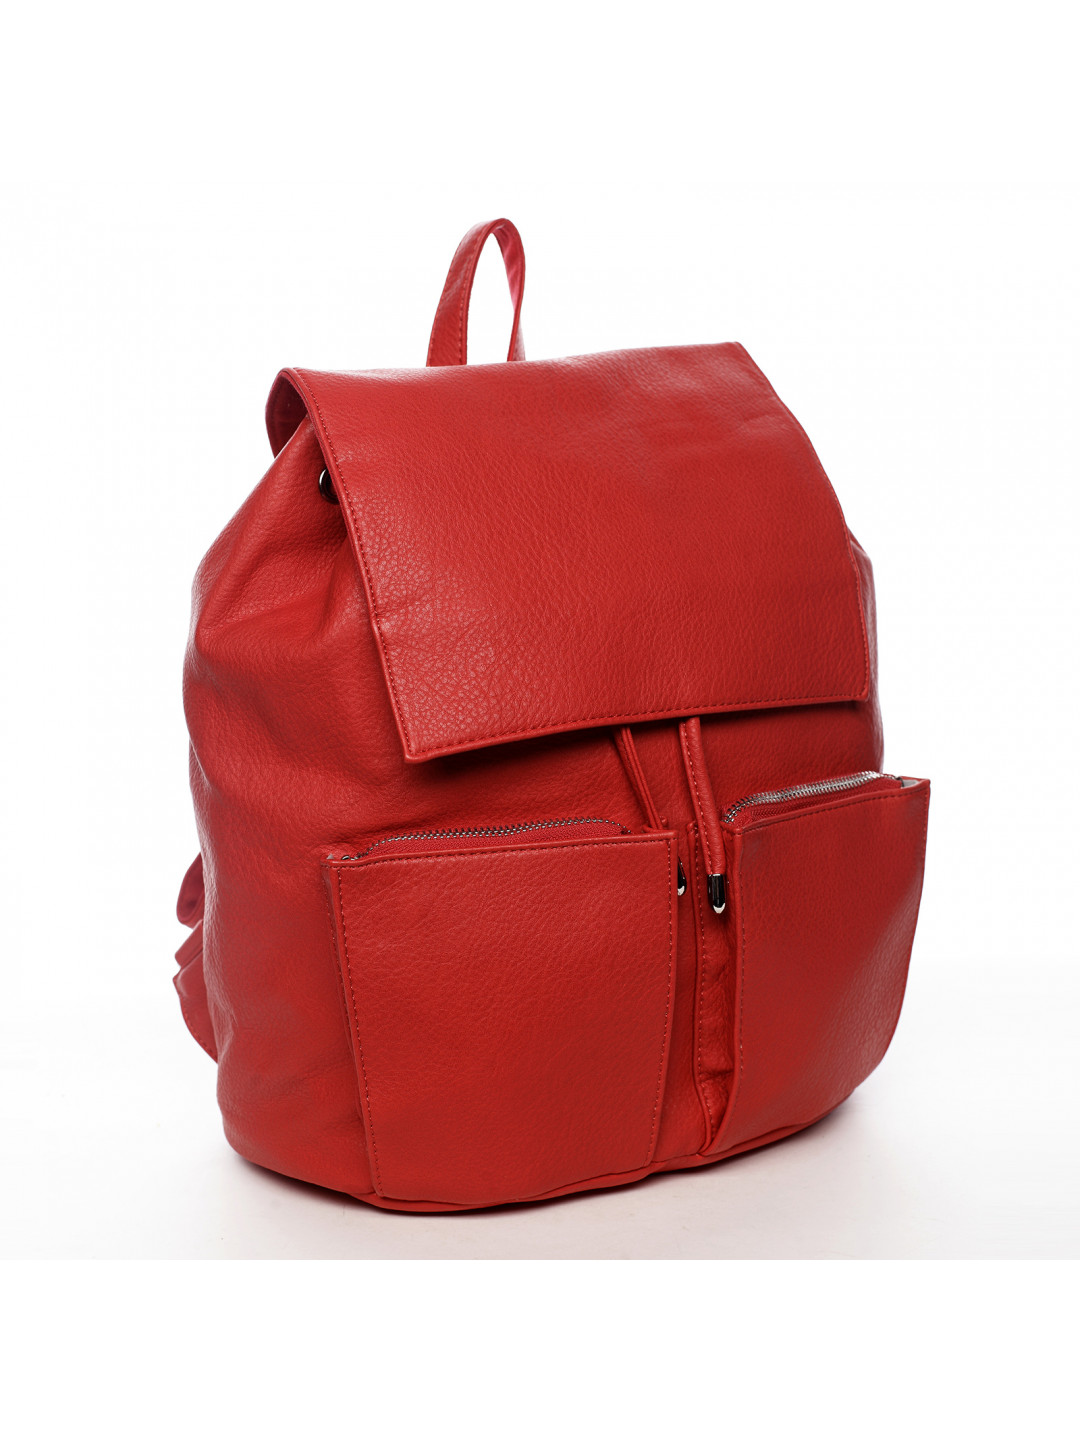 Designový dámský koženkový batoh Ilijana červená